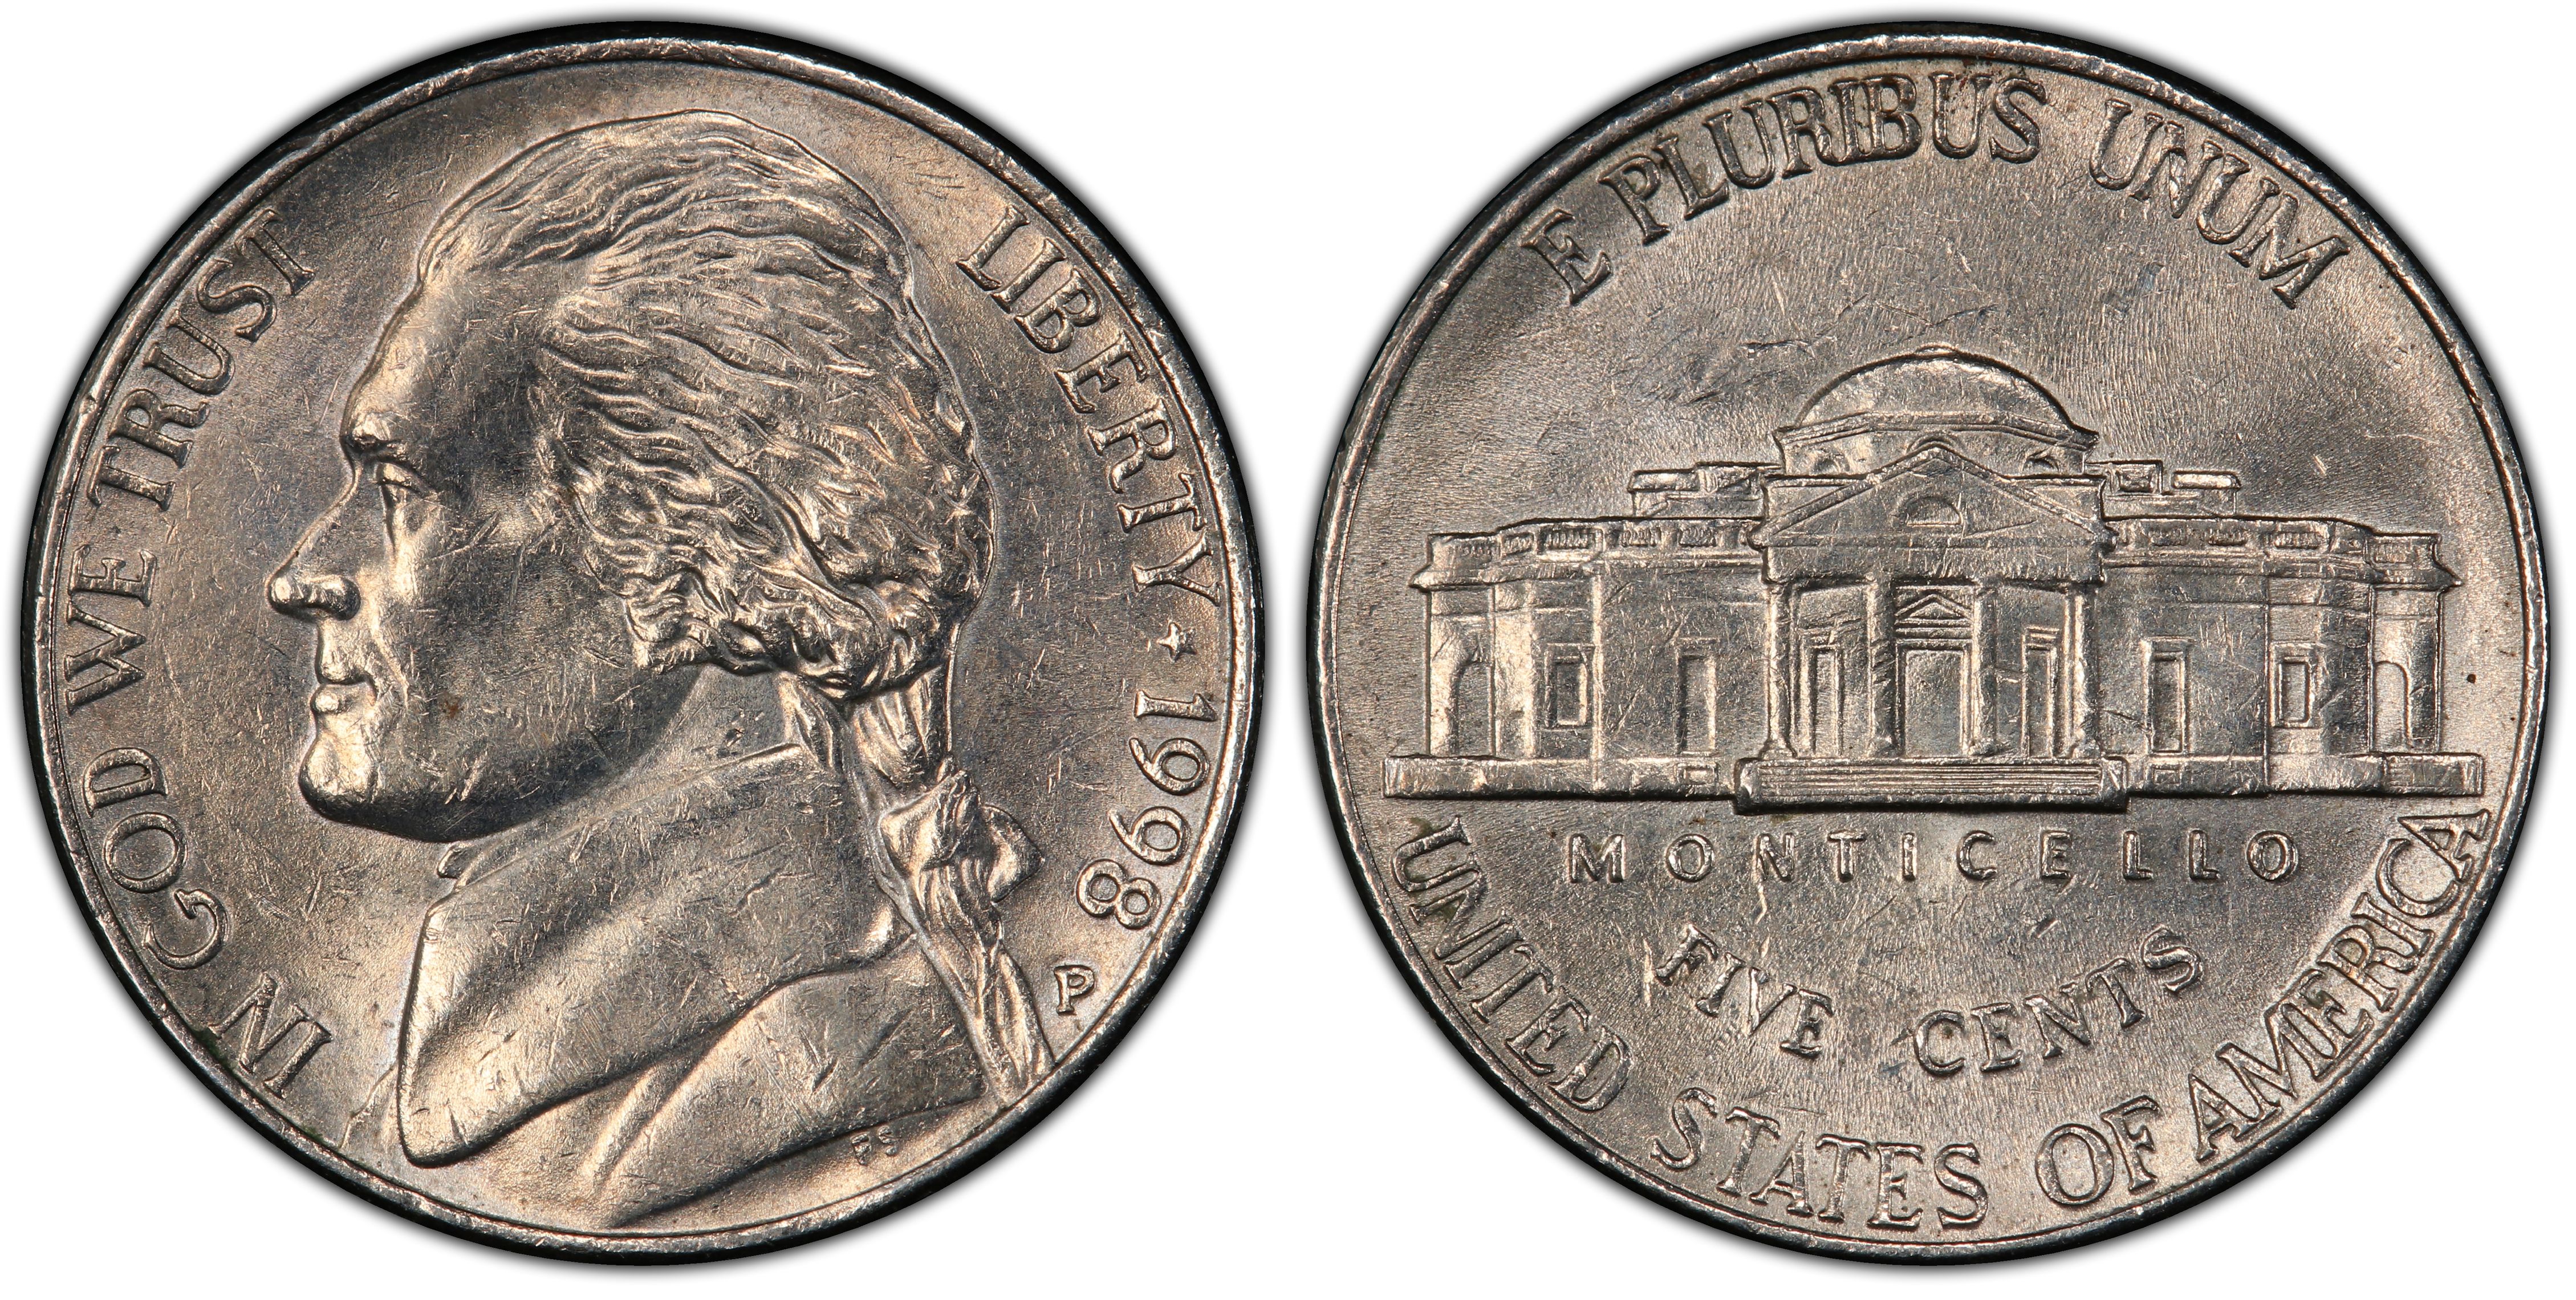 Details about   1998 P D Jefferson Nickels BU US Mint Cello 2 Coin Set 